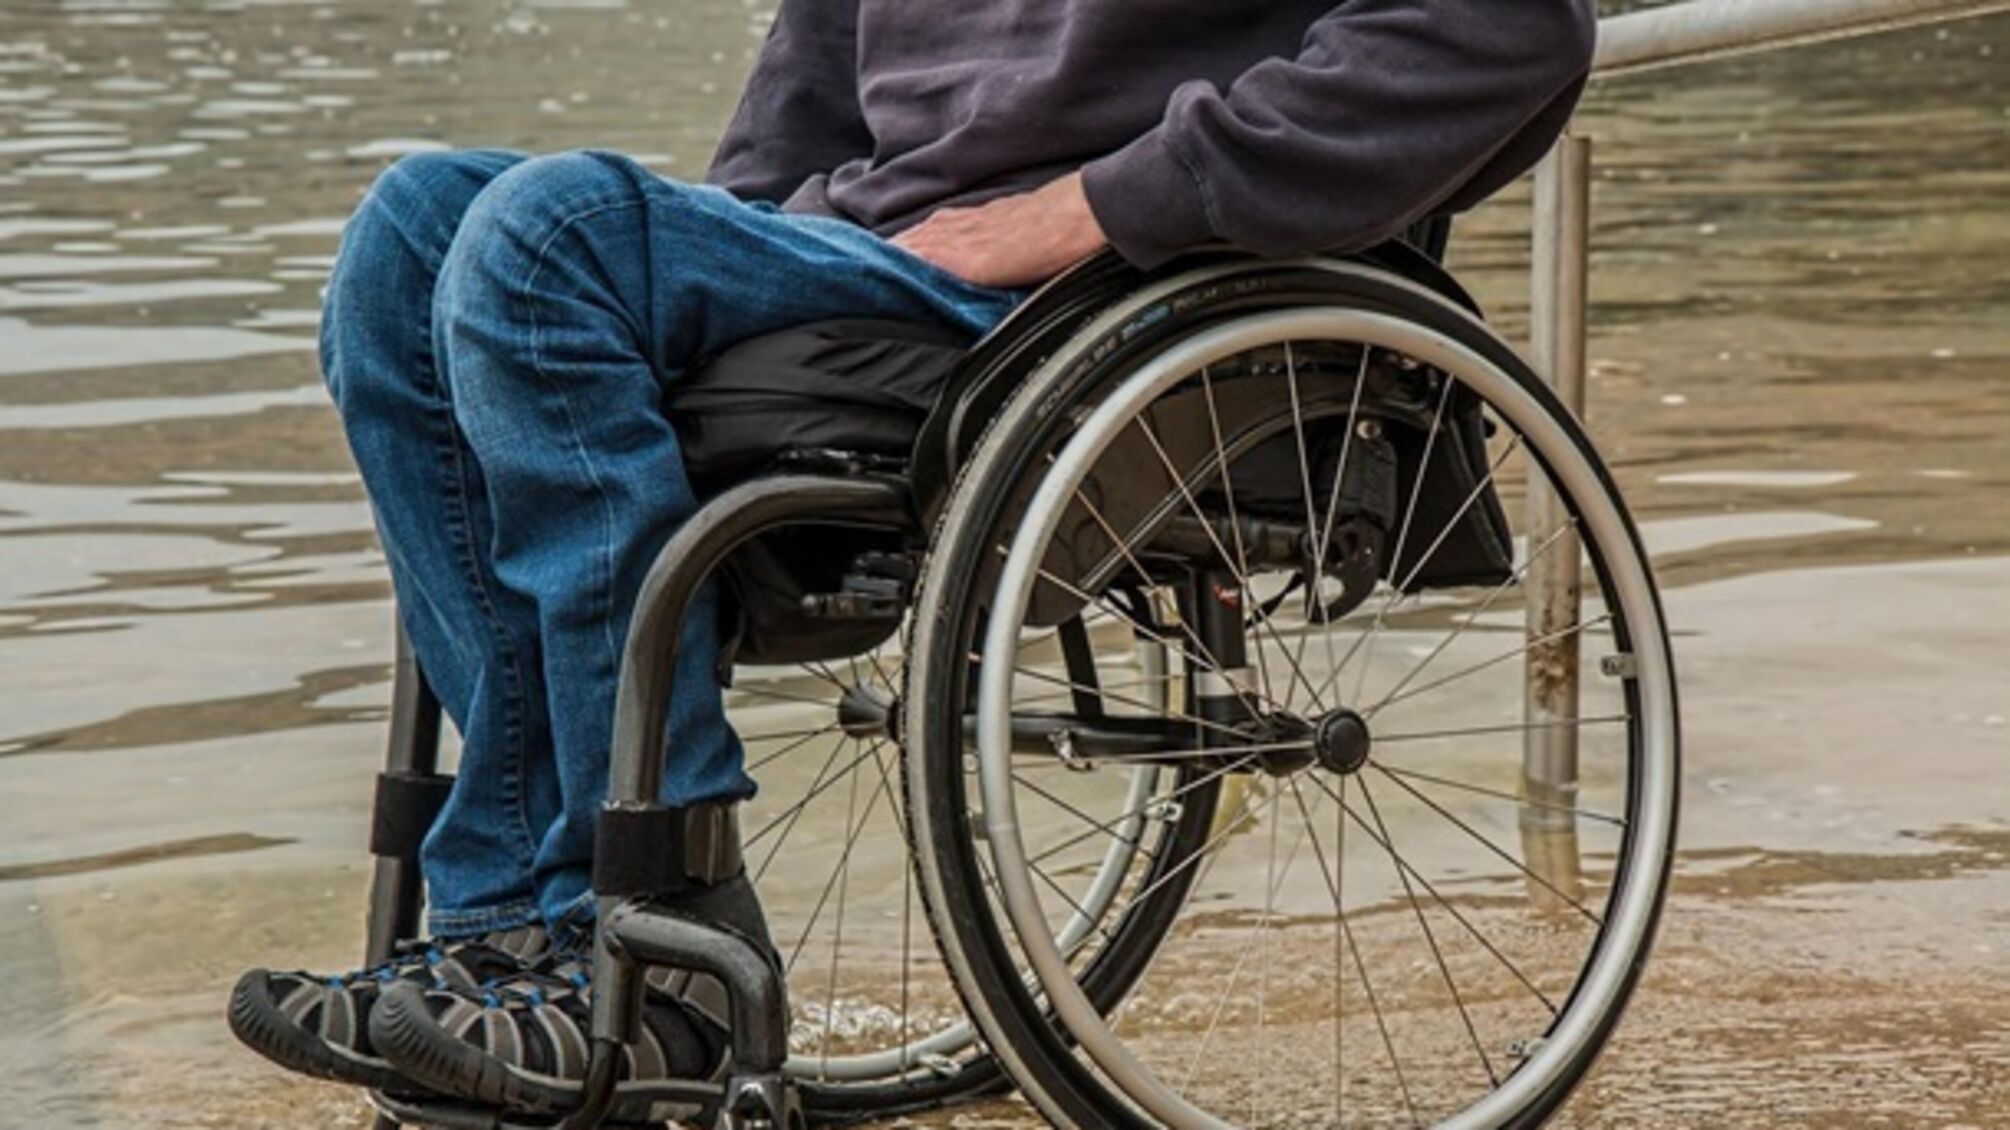 Україна може перейти до оцінки функціональності замість інвалідності